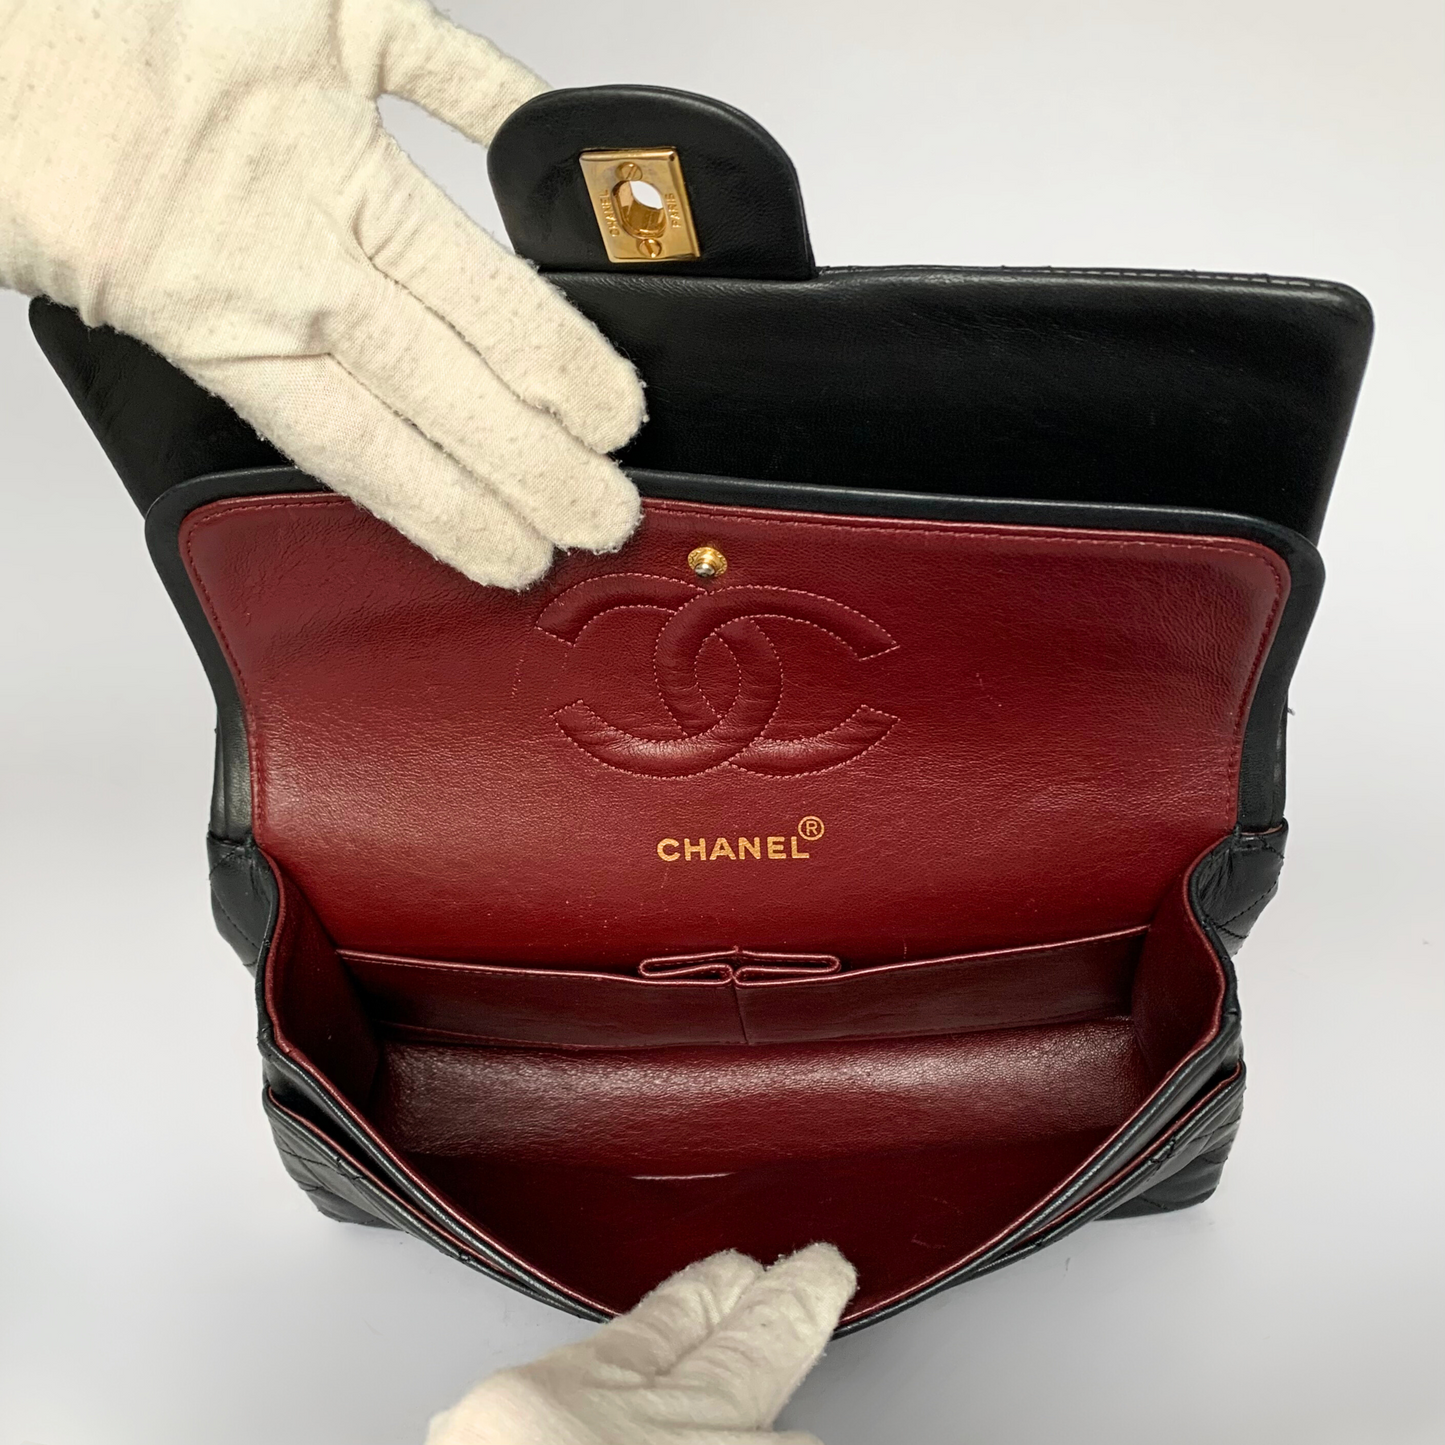 Chanel Chanel Klassisk dubbel Flap Bag Medium lammskinnsläder - Handväska - Etoile Luxury Vintage